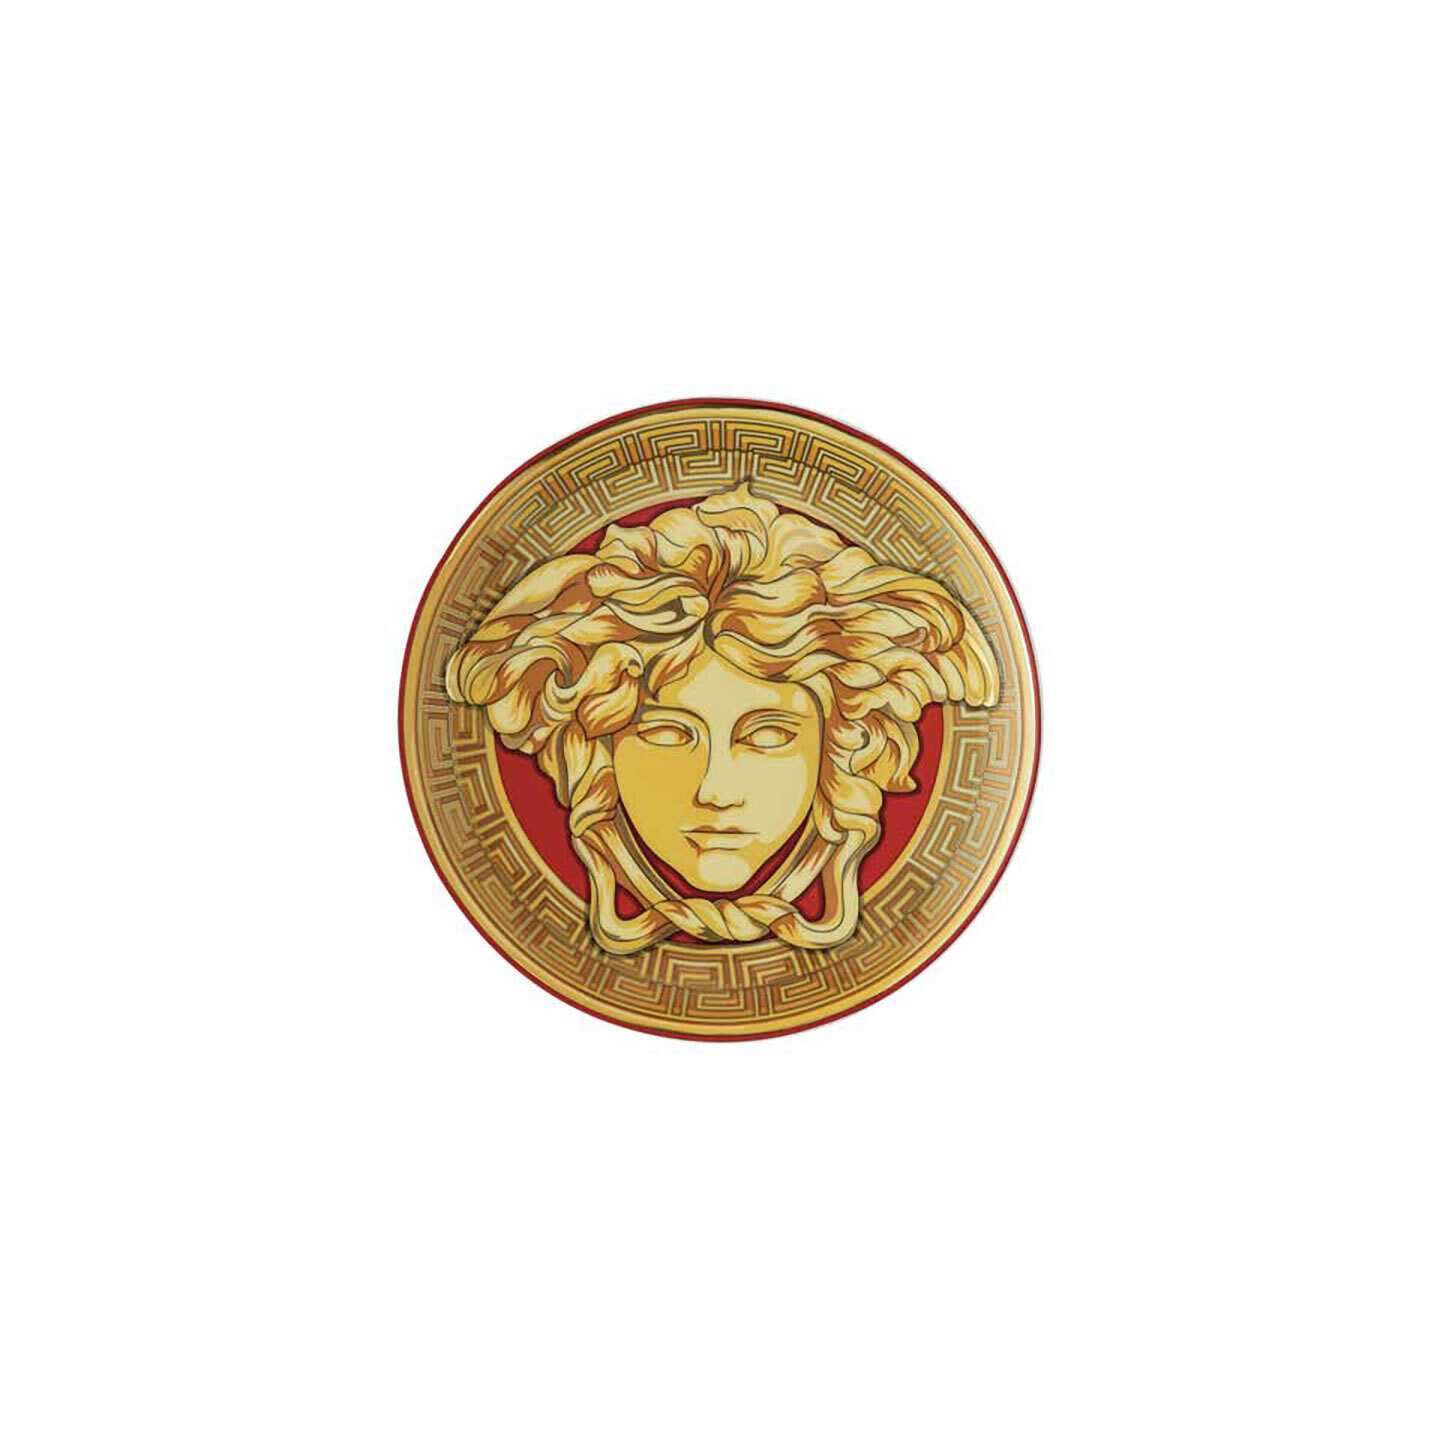 Versace Medusa Amplified Golden Coin Bread & Butter Plate 6 2/3 Inch